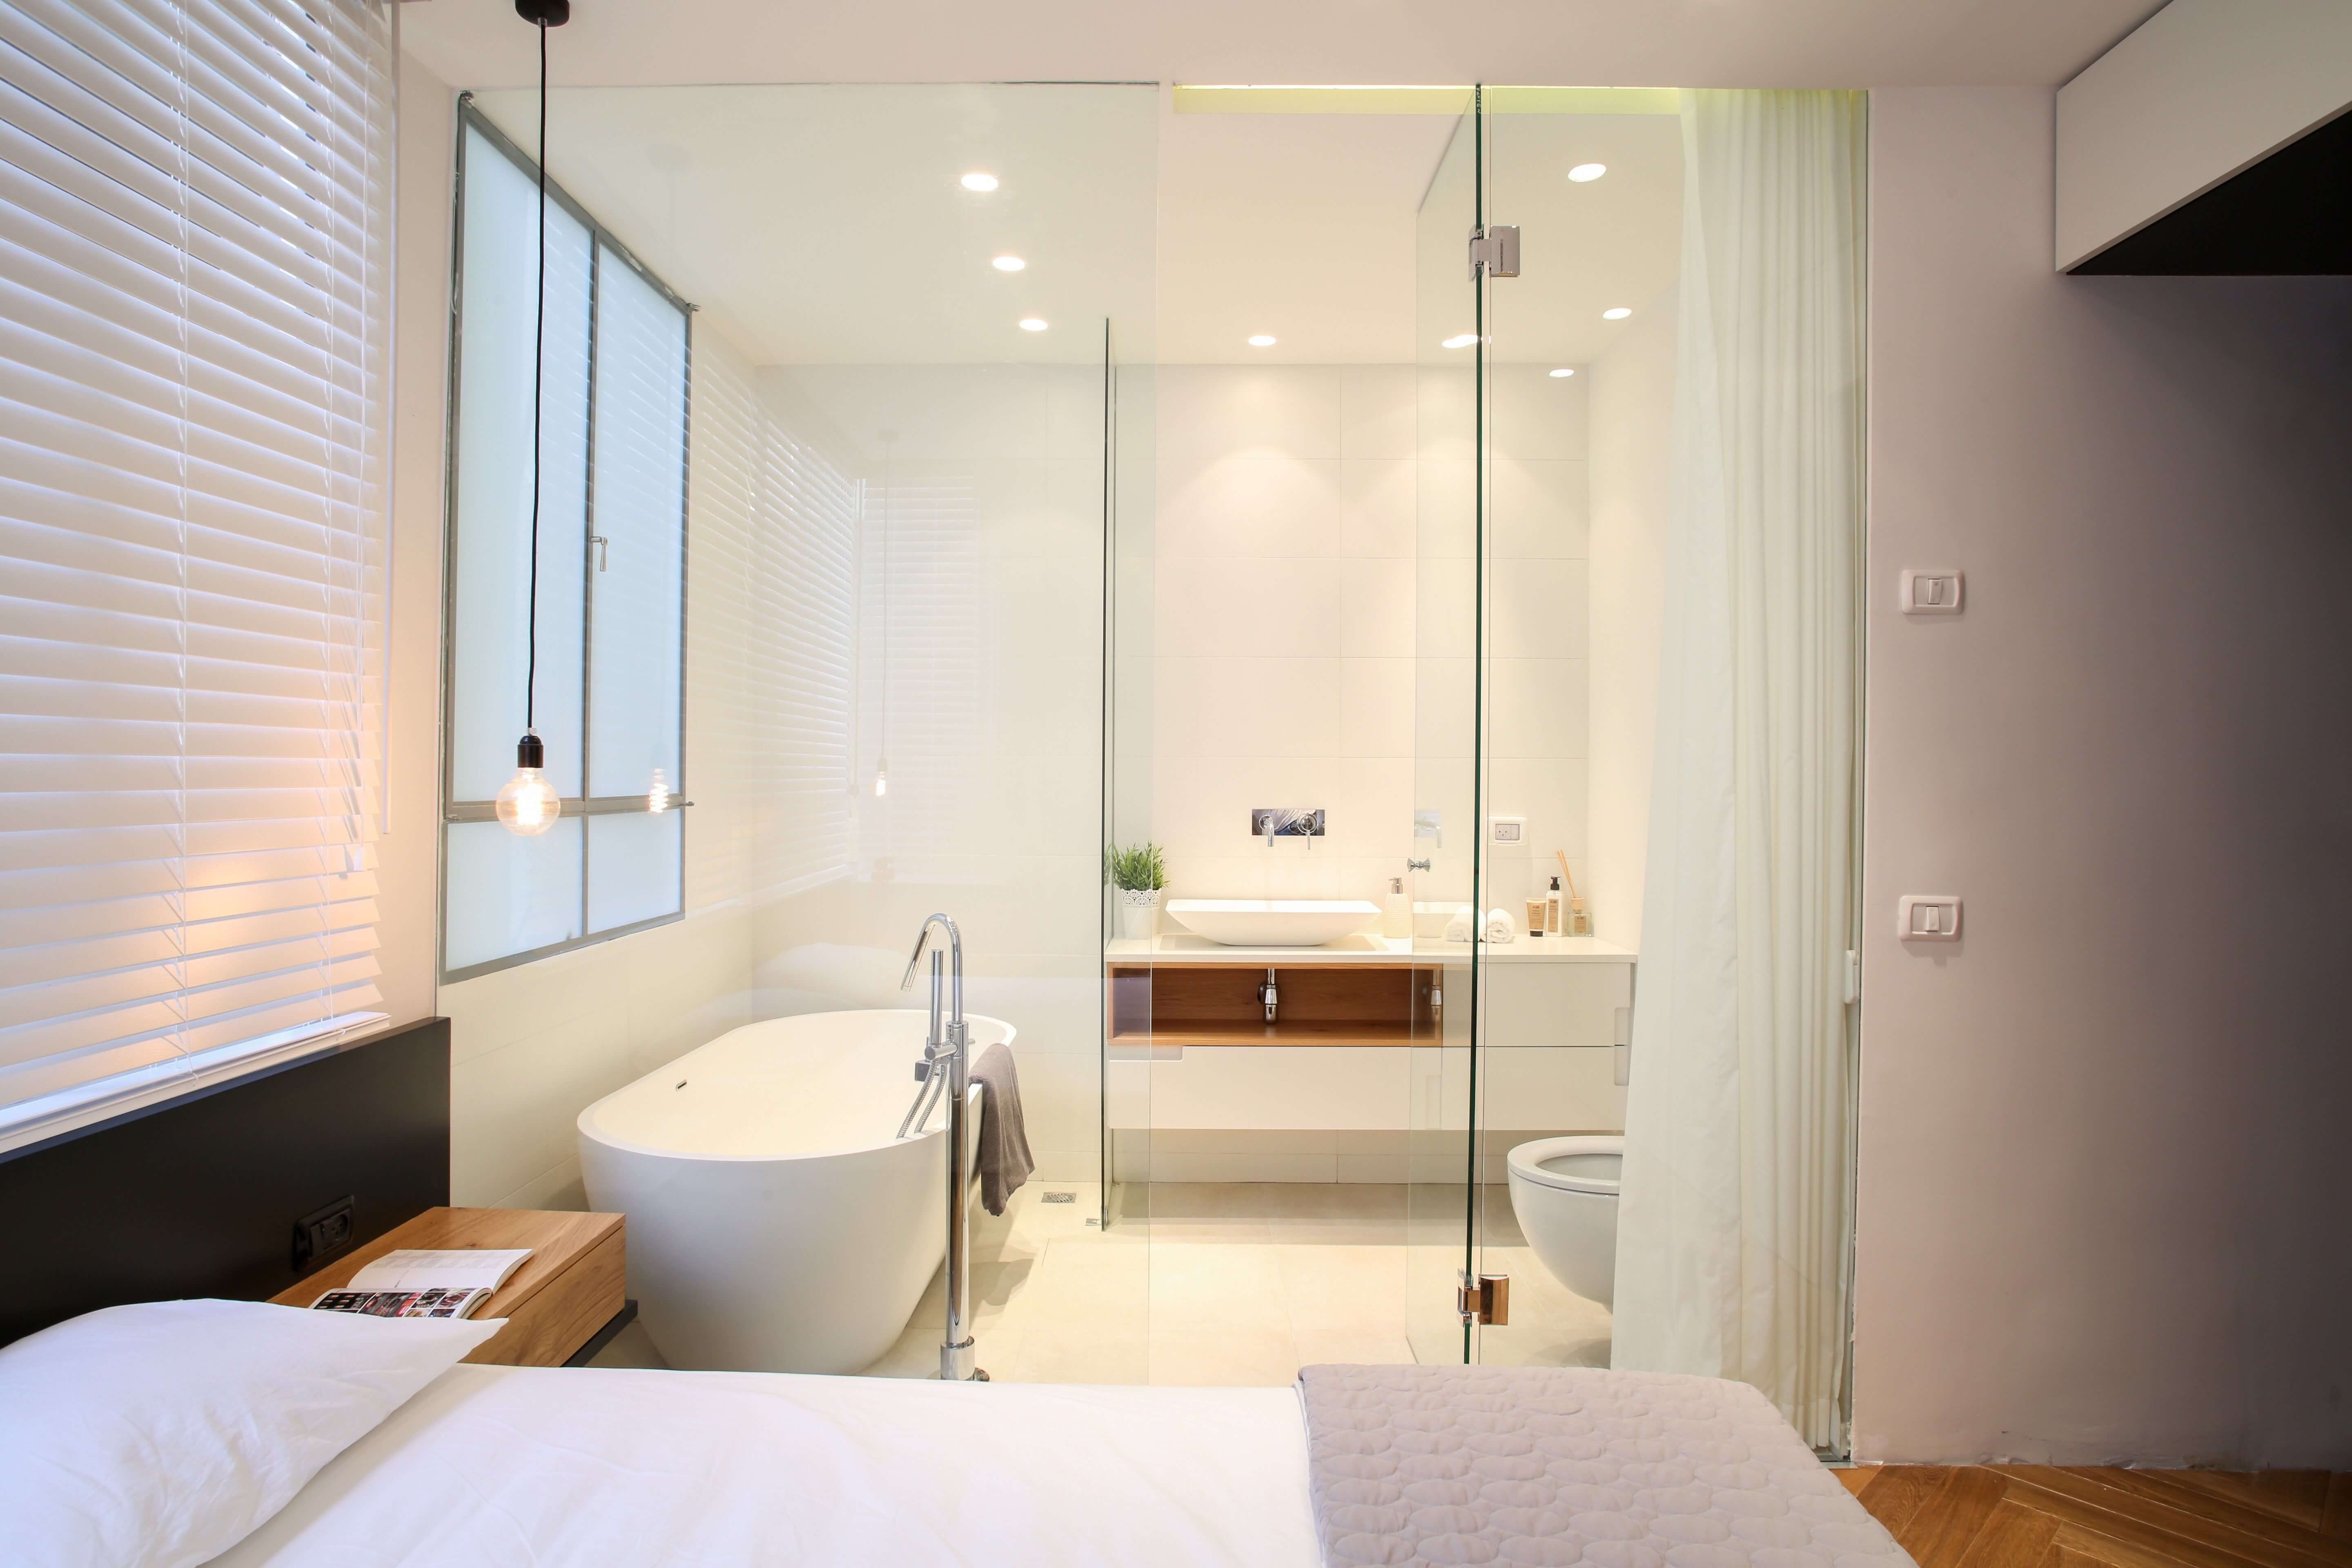 Кровать в ванной комнате. Ванная совмещенная со спальней. Ванная комната со стеклянной перегородкой. Ванная комната со стеклянными стенами. Ванная со стеклянной стеной.